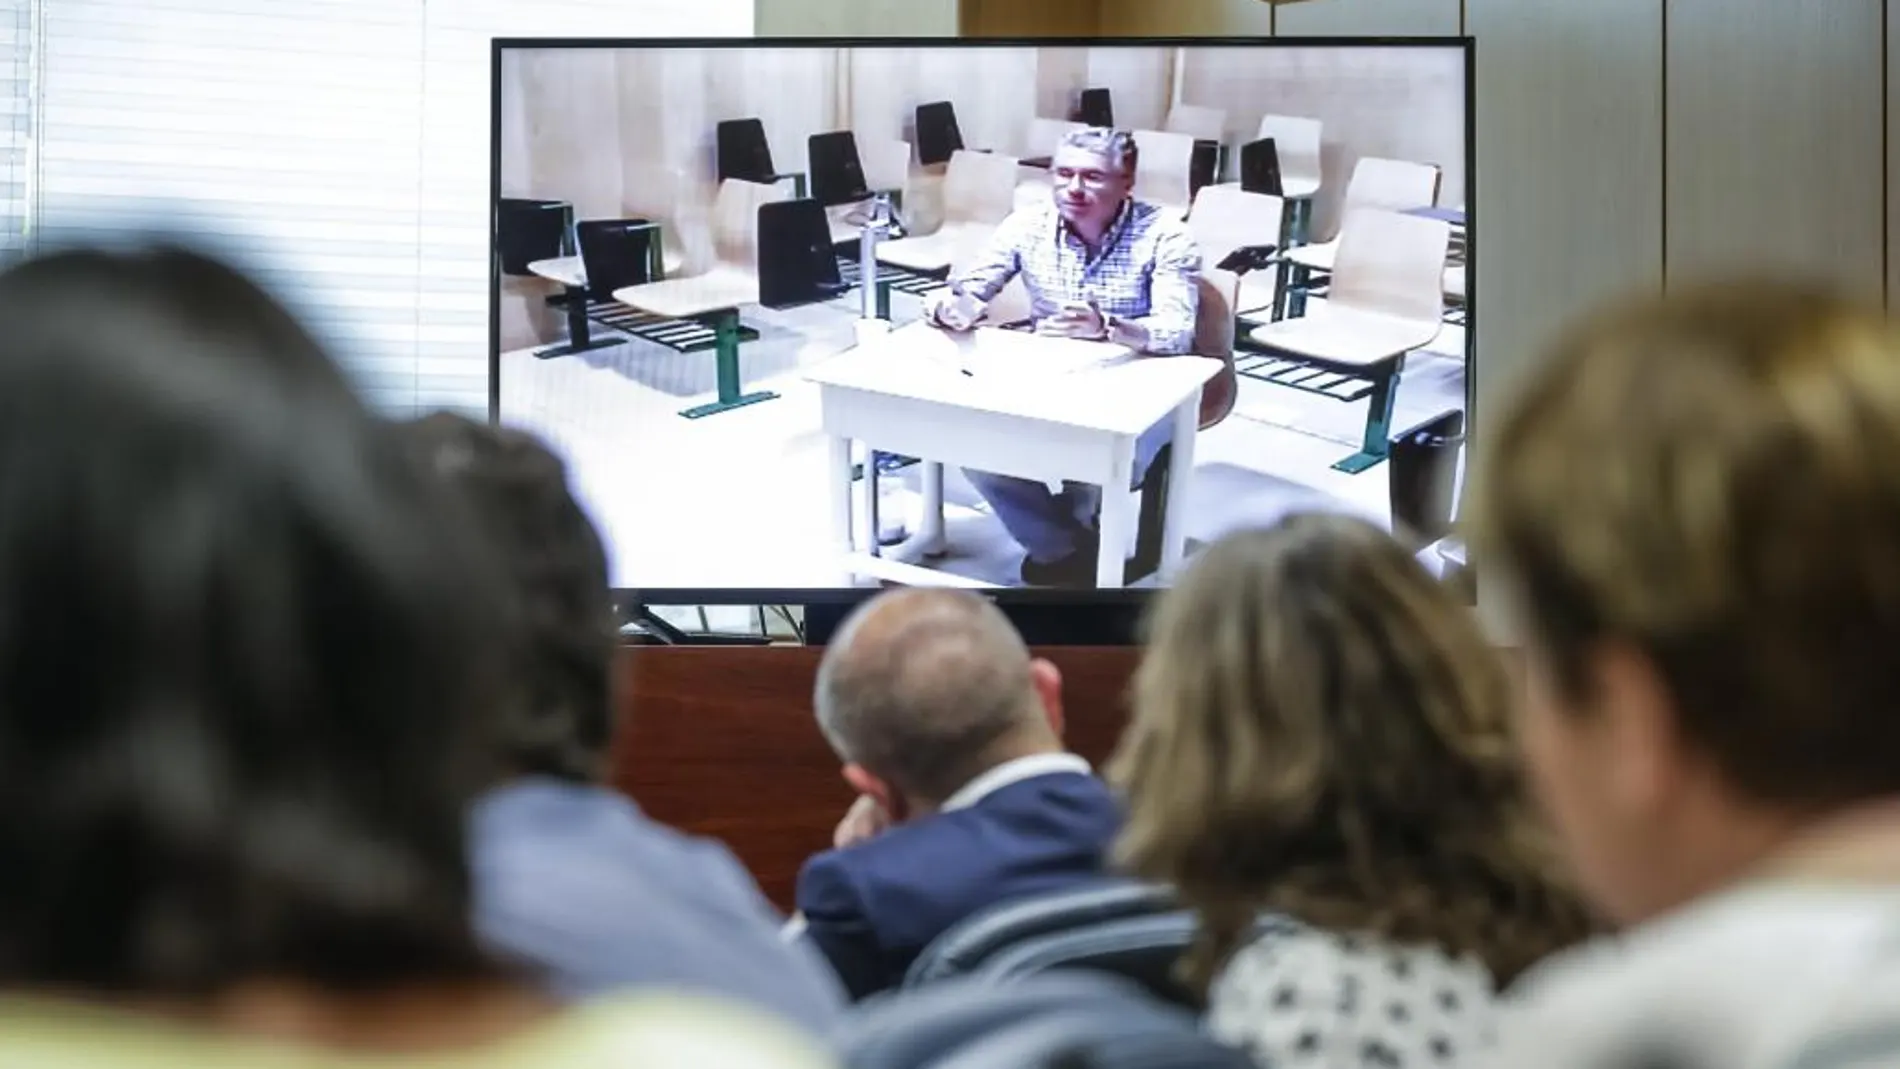 El exconsejero Francisco Granados, durante una comparecencia por videoconferencia desde la cárcel de Estremera el 3 de junio de 2016